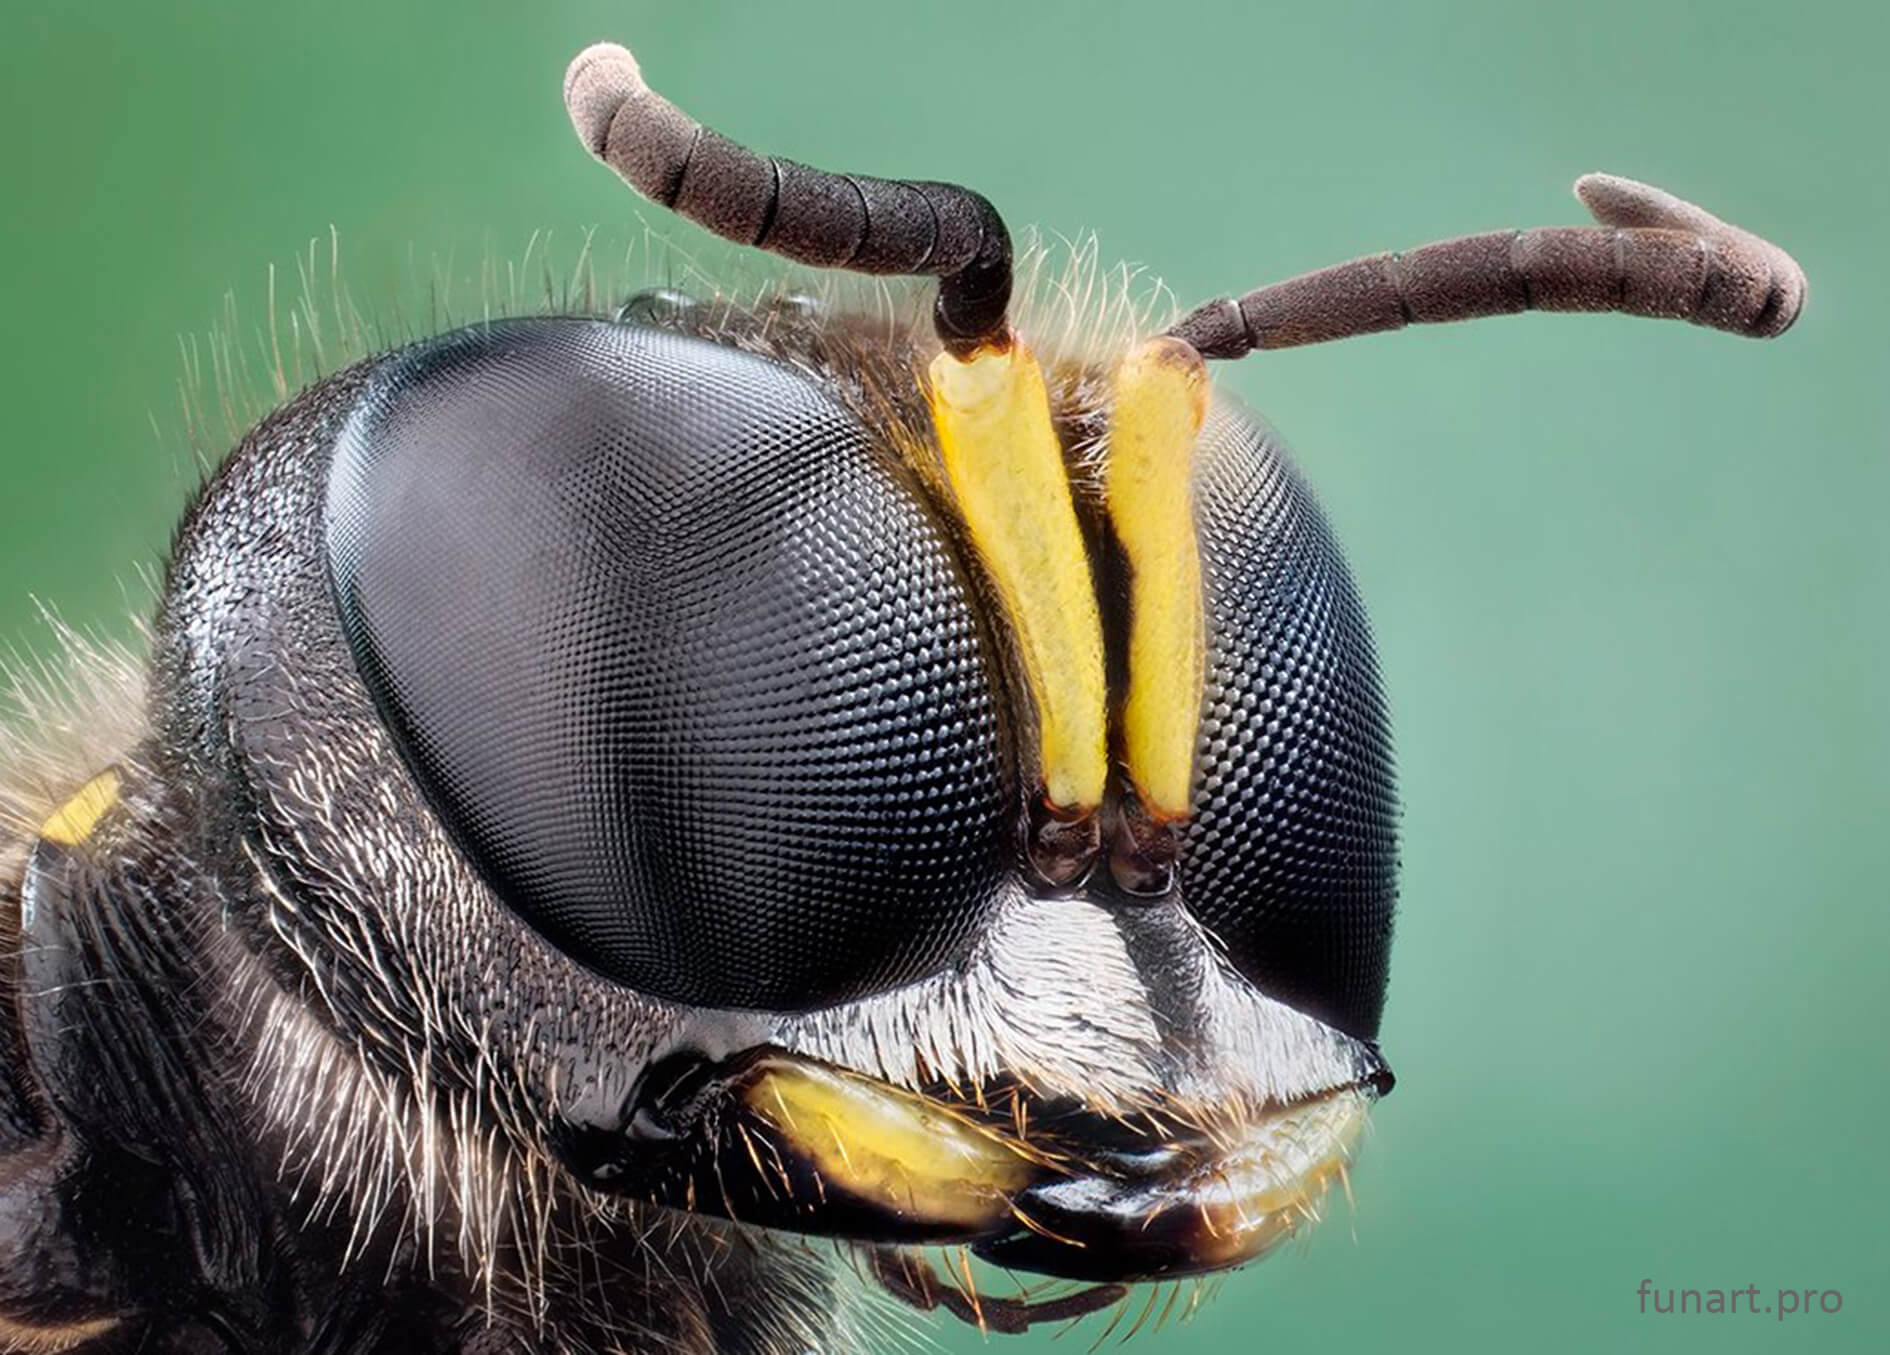 Заглянем насекомому в глаза через объектив микроскопа. Насекомые под микроскопом: комар, муха, муравей и др. 